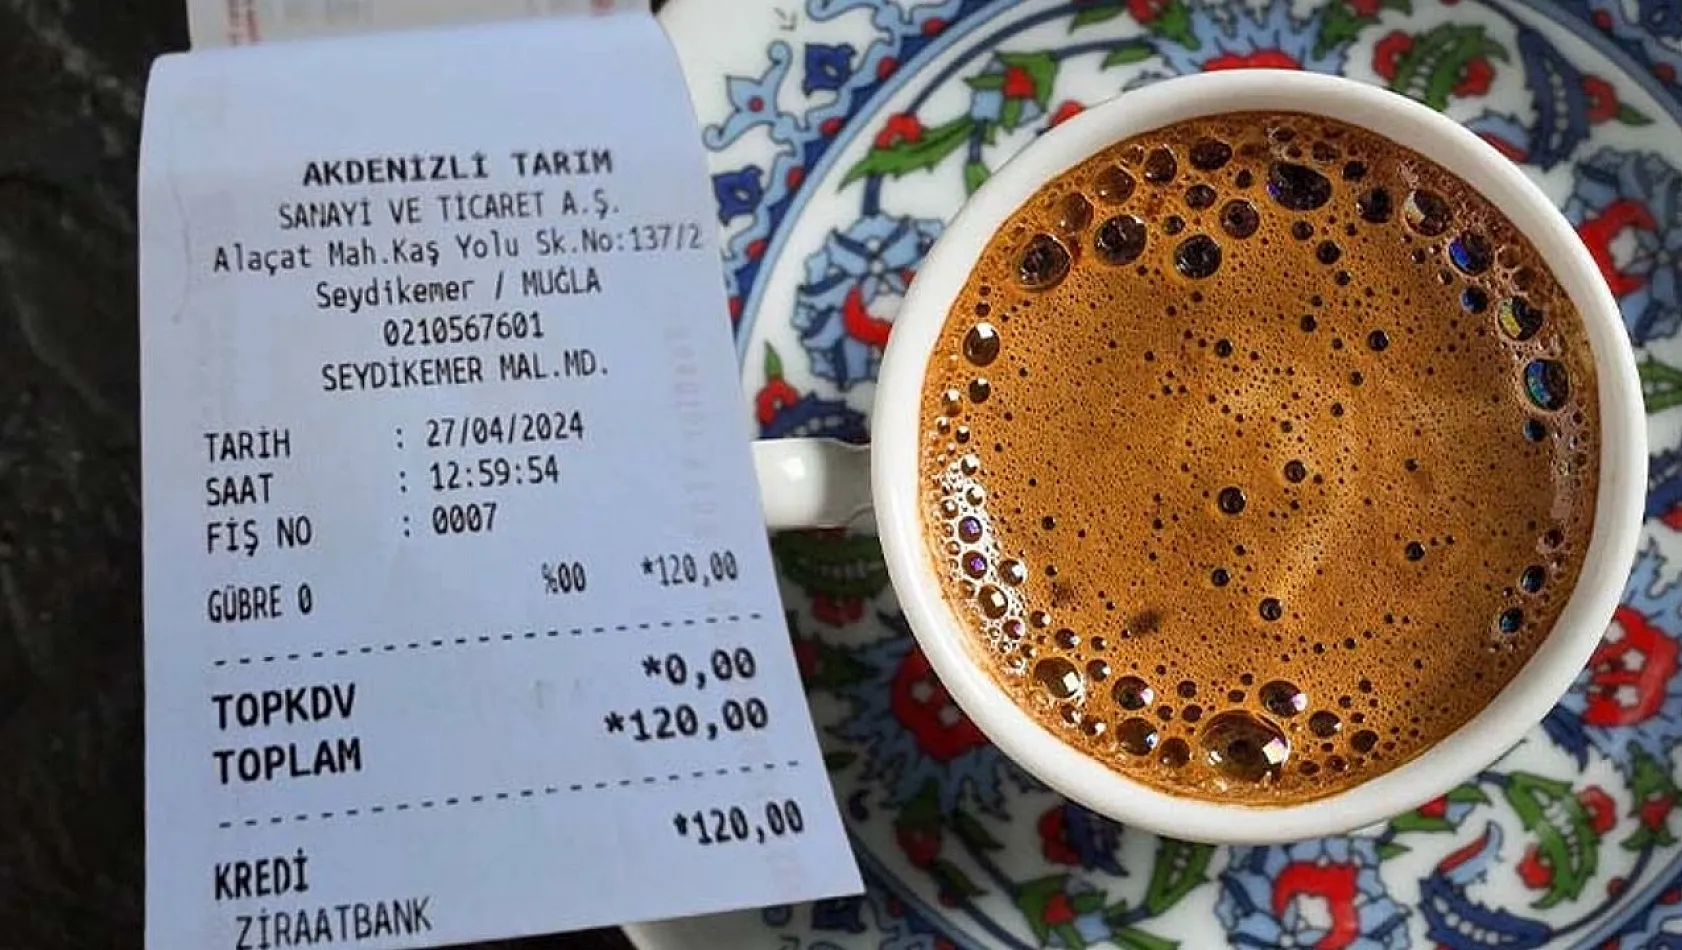 Restoran İçilen Kahveden Vergi Kaçırmak İçin Fişe Gübre Olarak Yansıttı